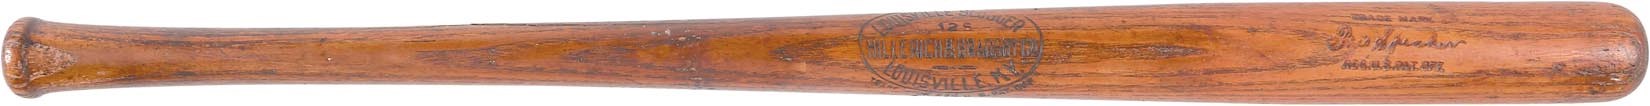 Baseball Equipment - Early 1920s Tris Speaker Game-Used & Factory Side-Written Bat (PSA/DNA GU 8.5)